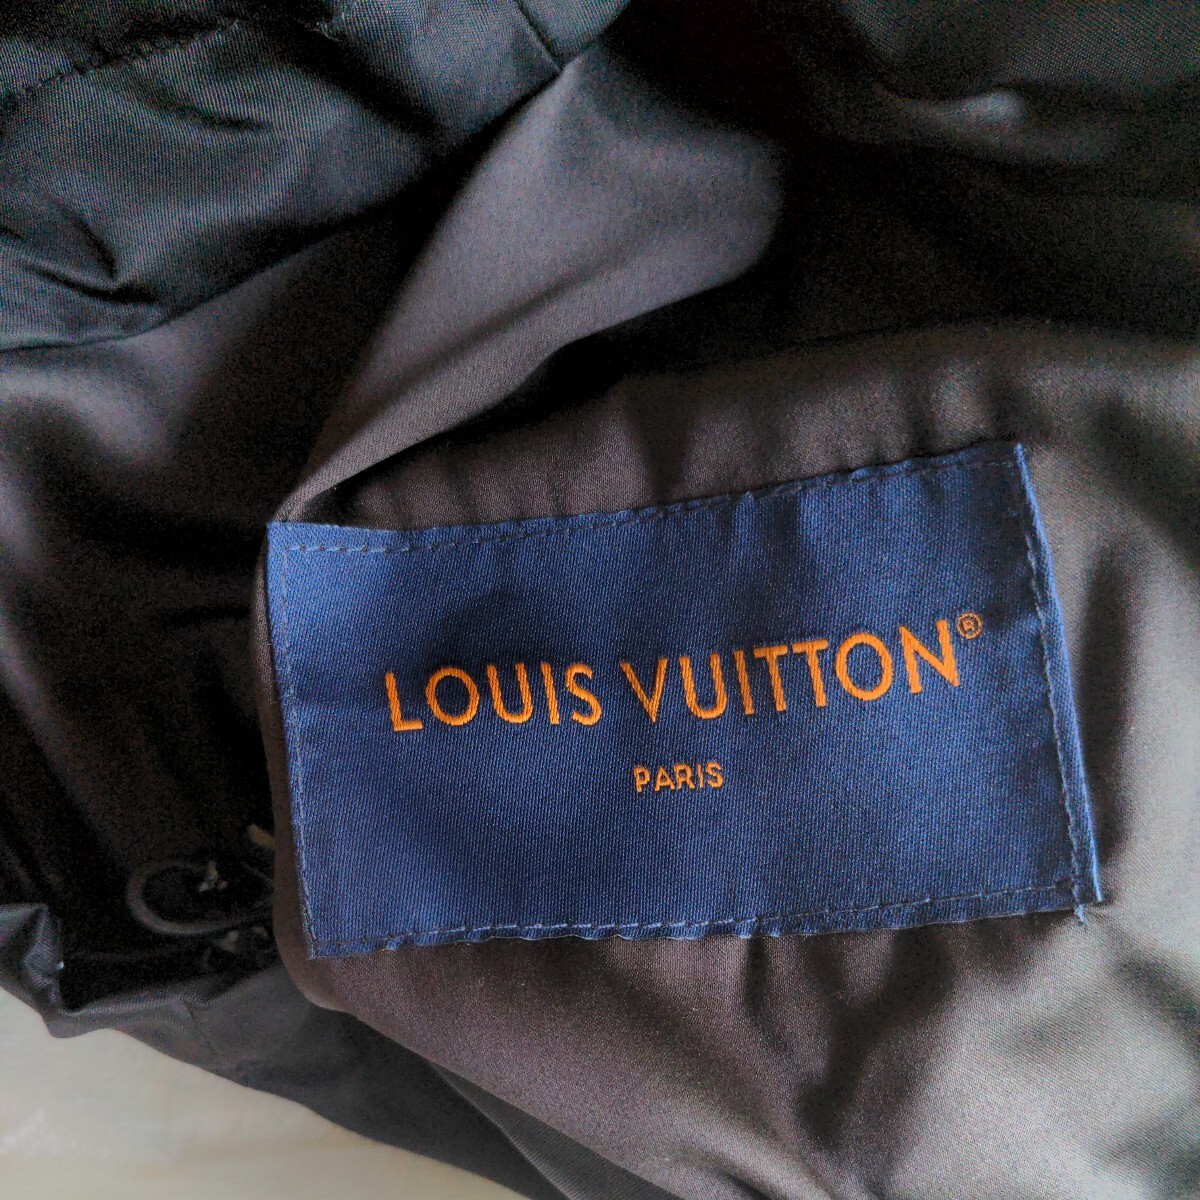  произведена чистка,1 иен старт!LOUISVUITTON коуч жакет L размер va- Jill *a blow Louis Vuitton Jacket